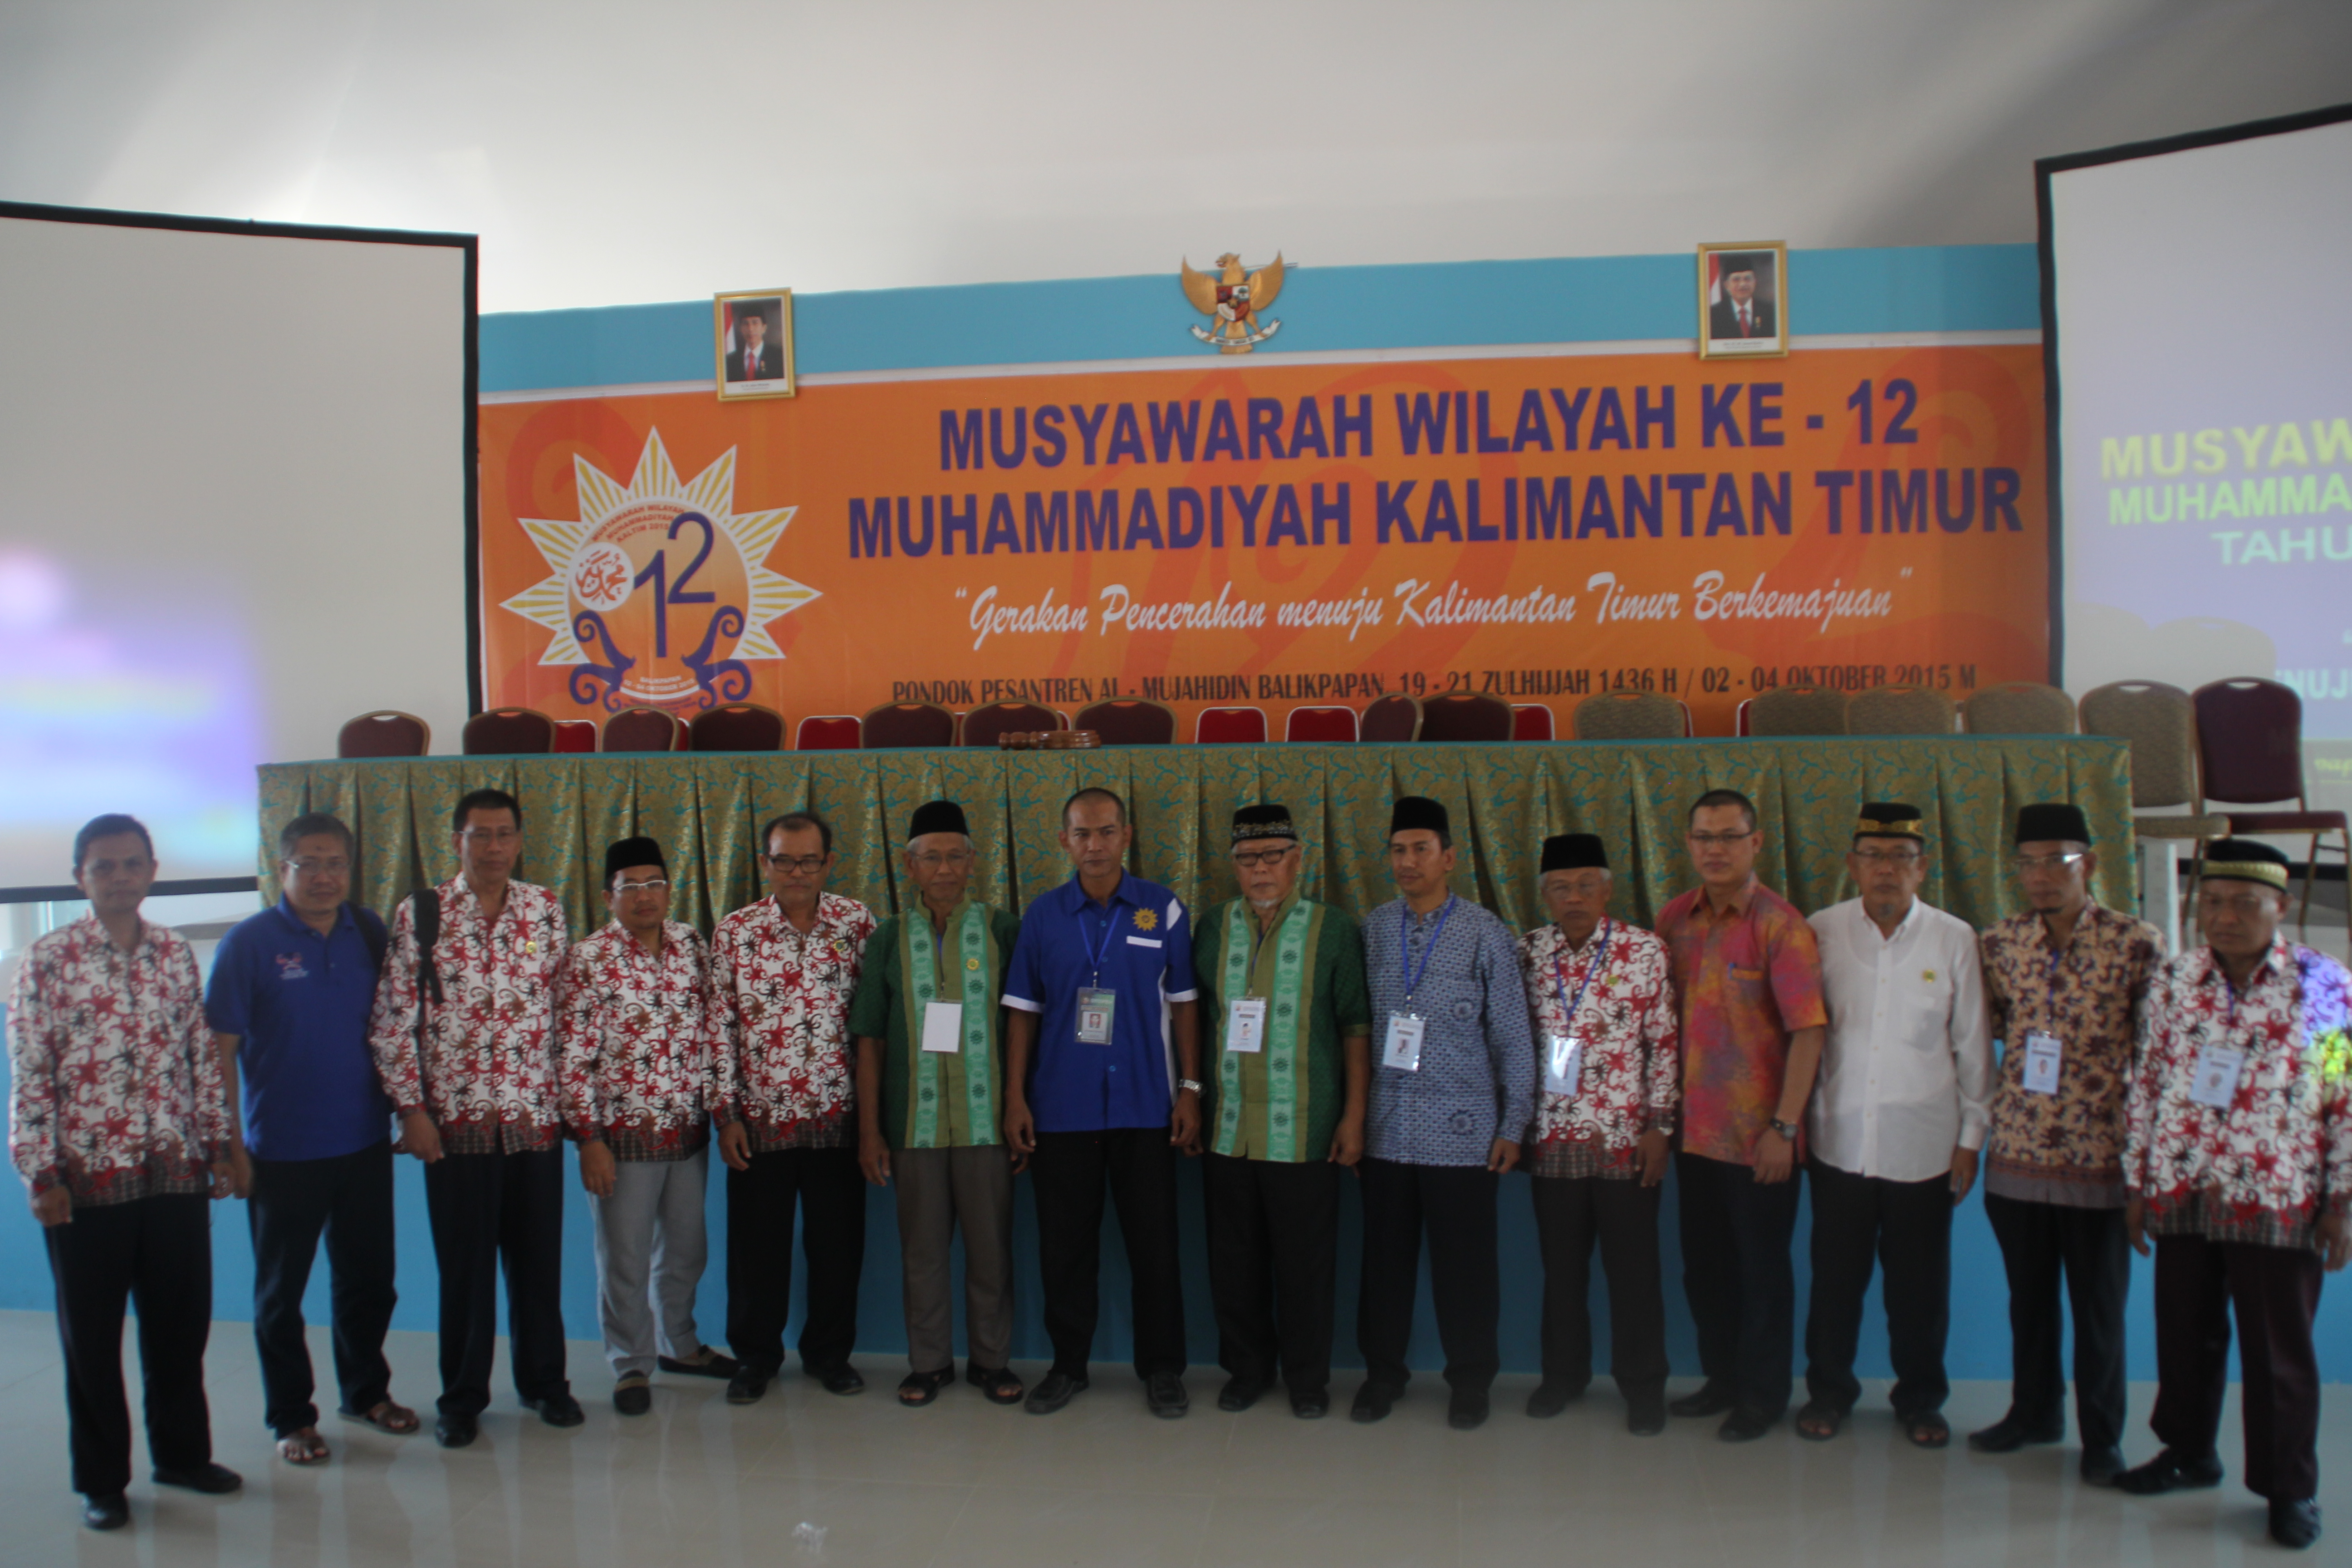 Majelis Pendidikan Dasar dan Menengah PW Muhammadiyah Kalimantan Timur